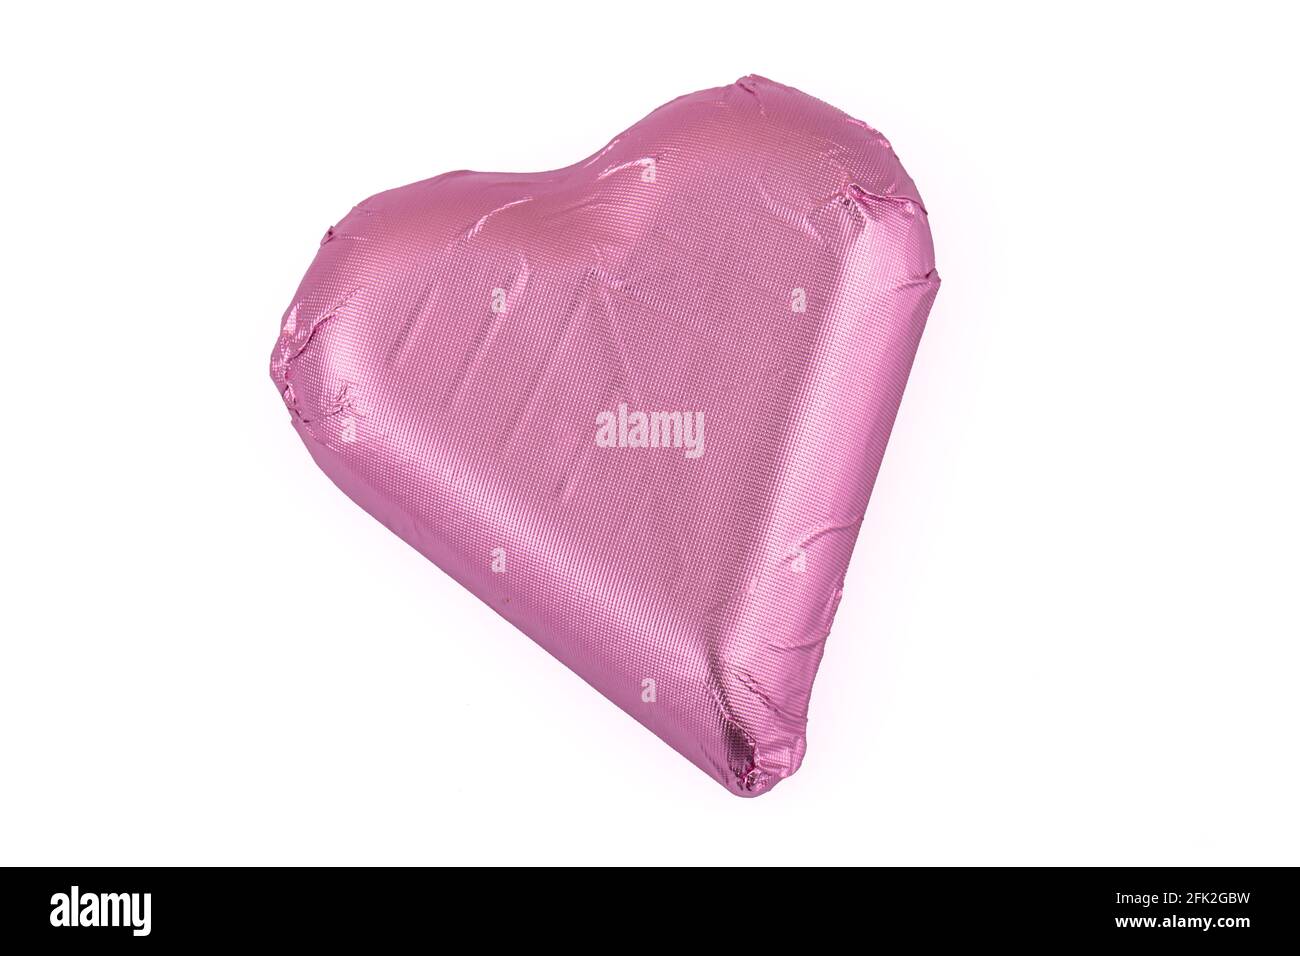 Cioccolato a cuore rosa. Isolare la forma del cuore del cioccolato disporre su sfondo bianco. Foto Stock